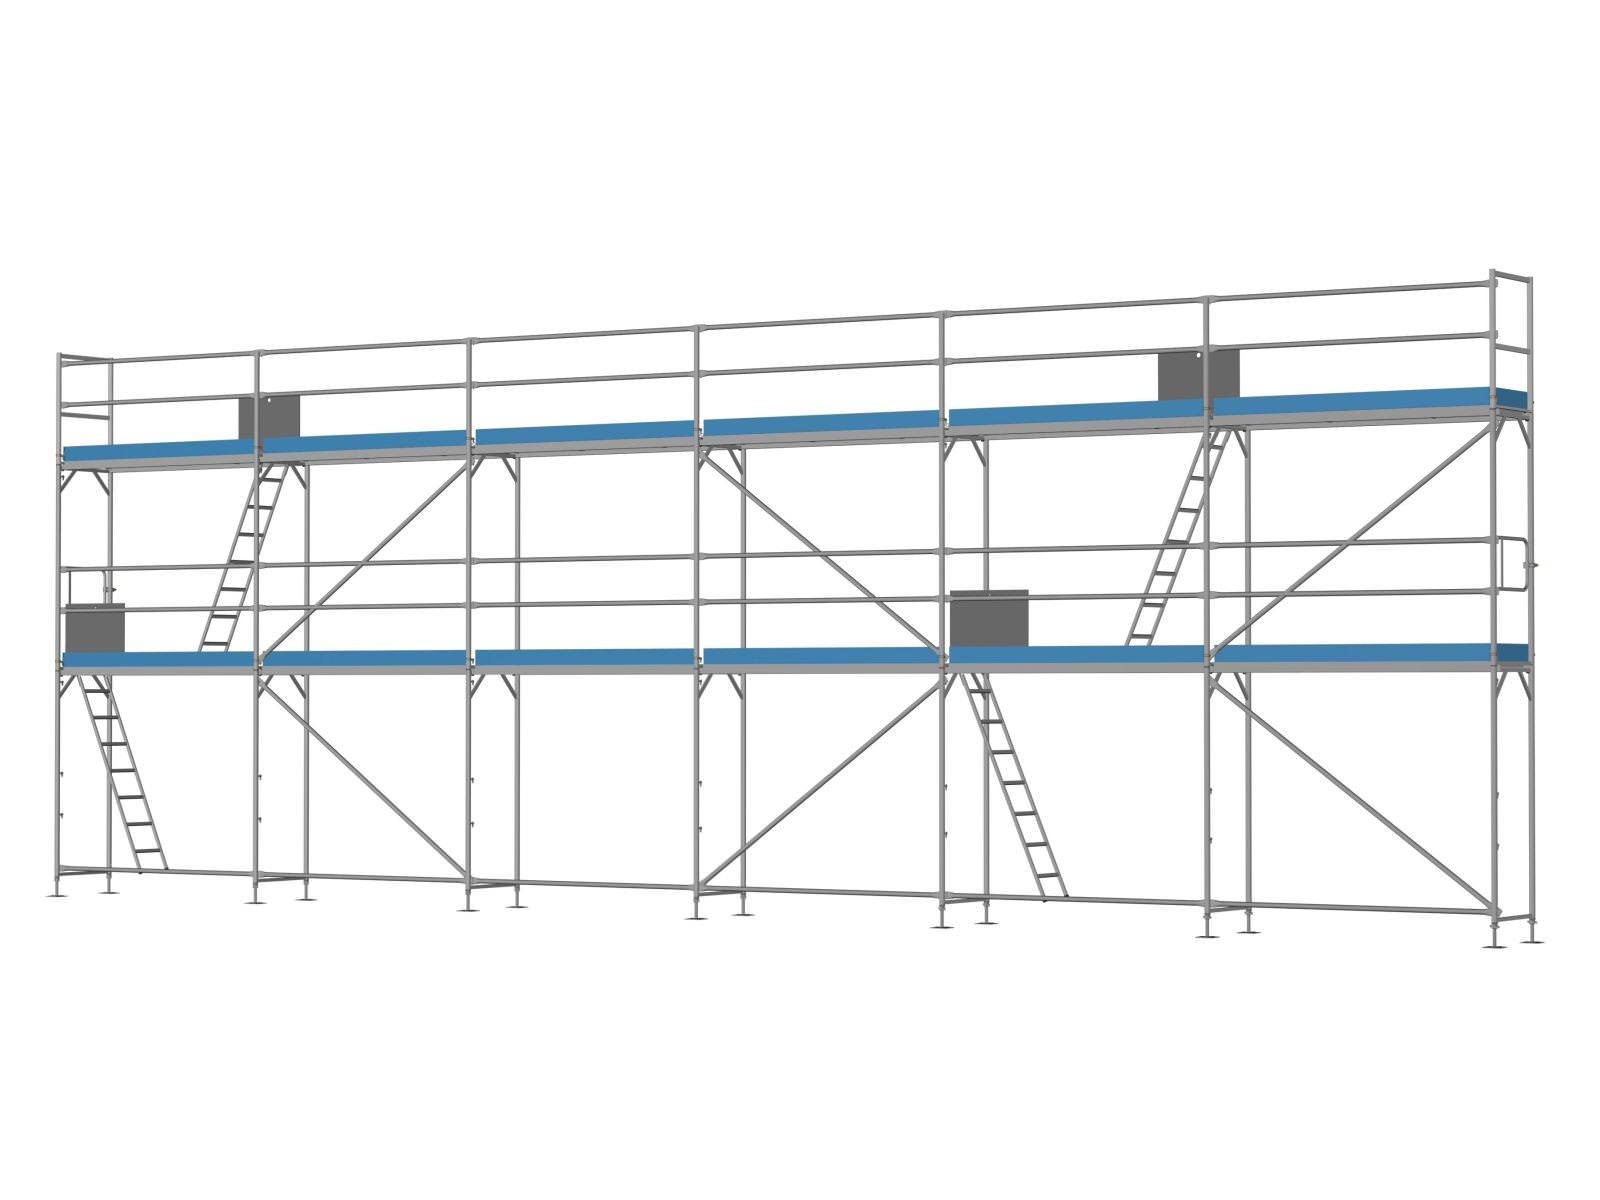 Stahl Traufseitengerüst 90 m² - 2,5 m Felder - 15 m lang - 6 m Arbeitshöhe - Komplettpaket